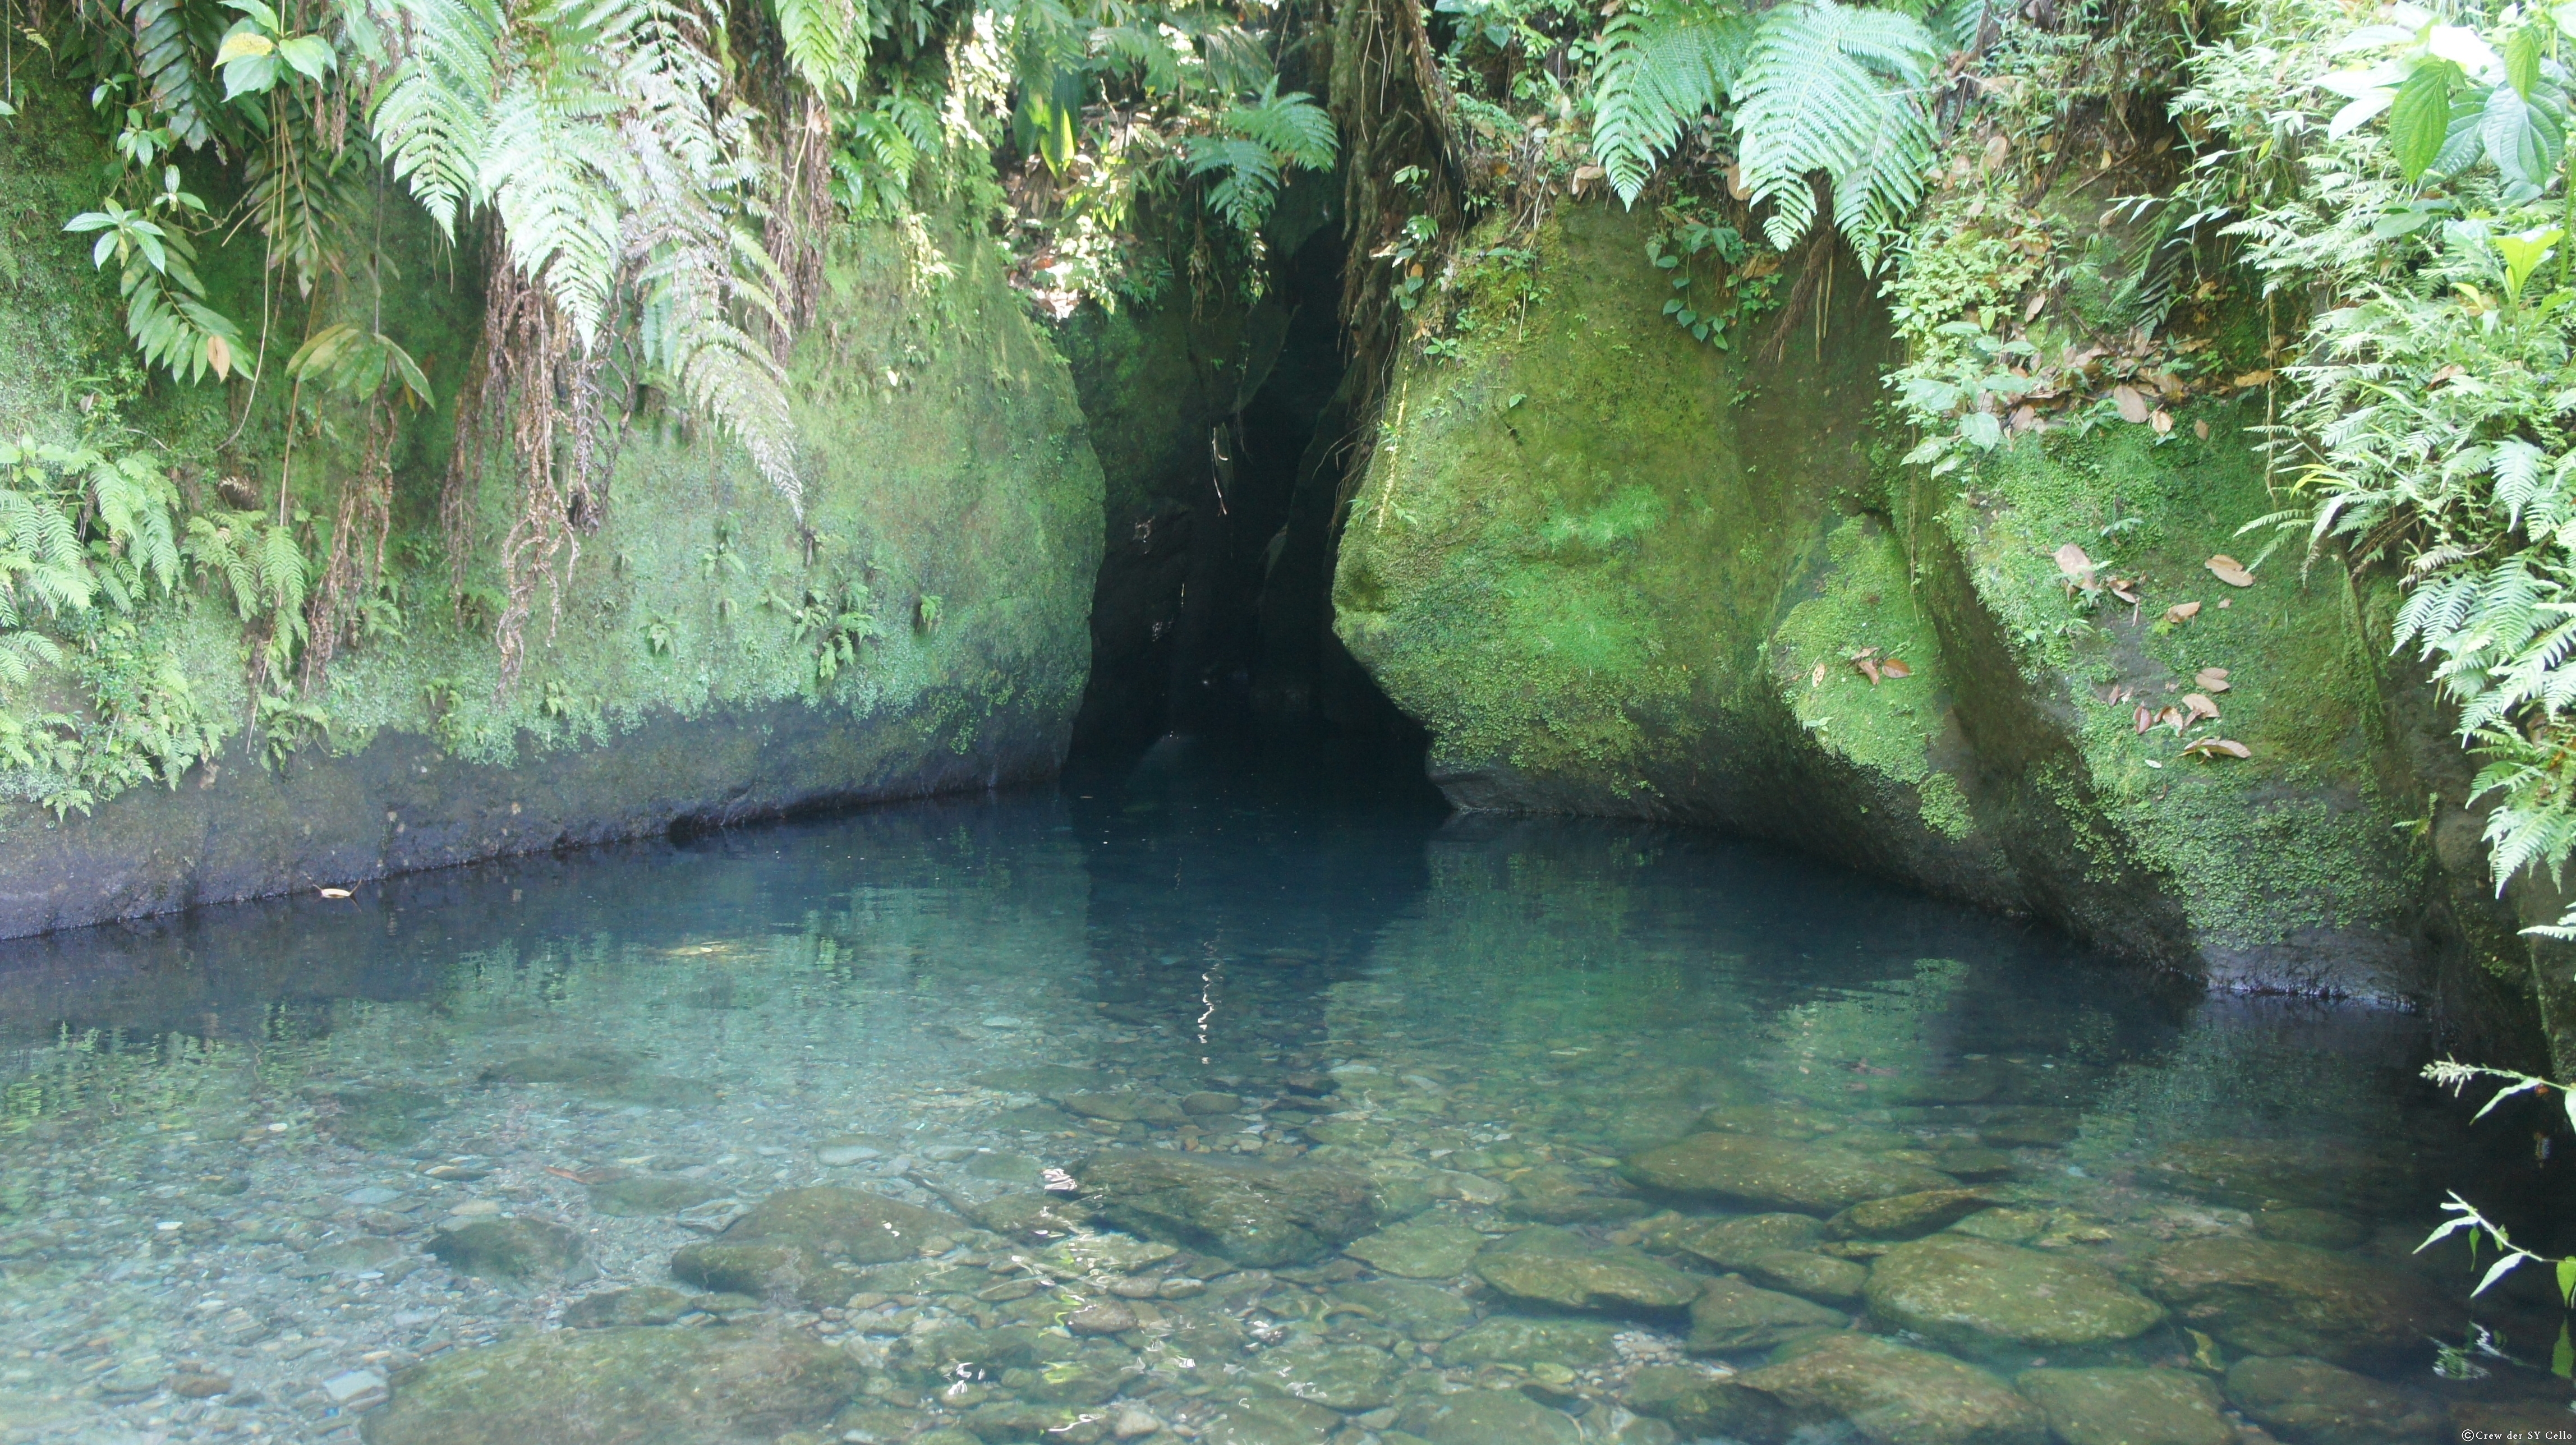 Eingang zur &ldquo;Ti Tou Gorge&rdquo;, einer kleinen Schlucht, die man durchschwimmen kann.